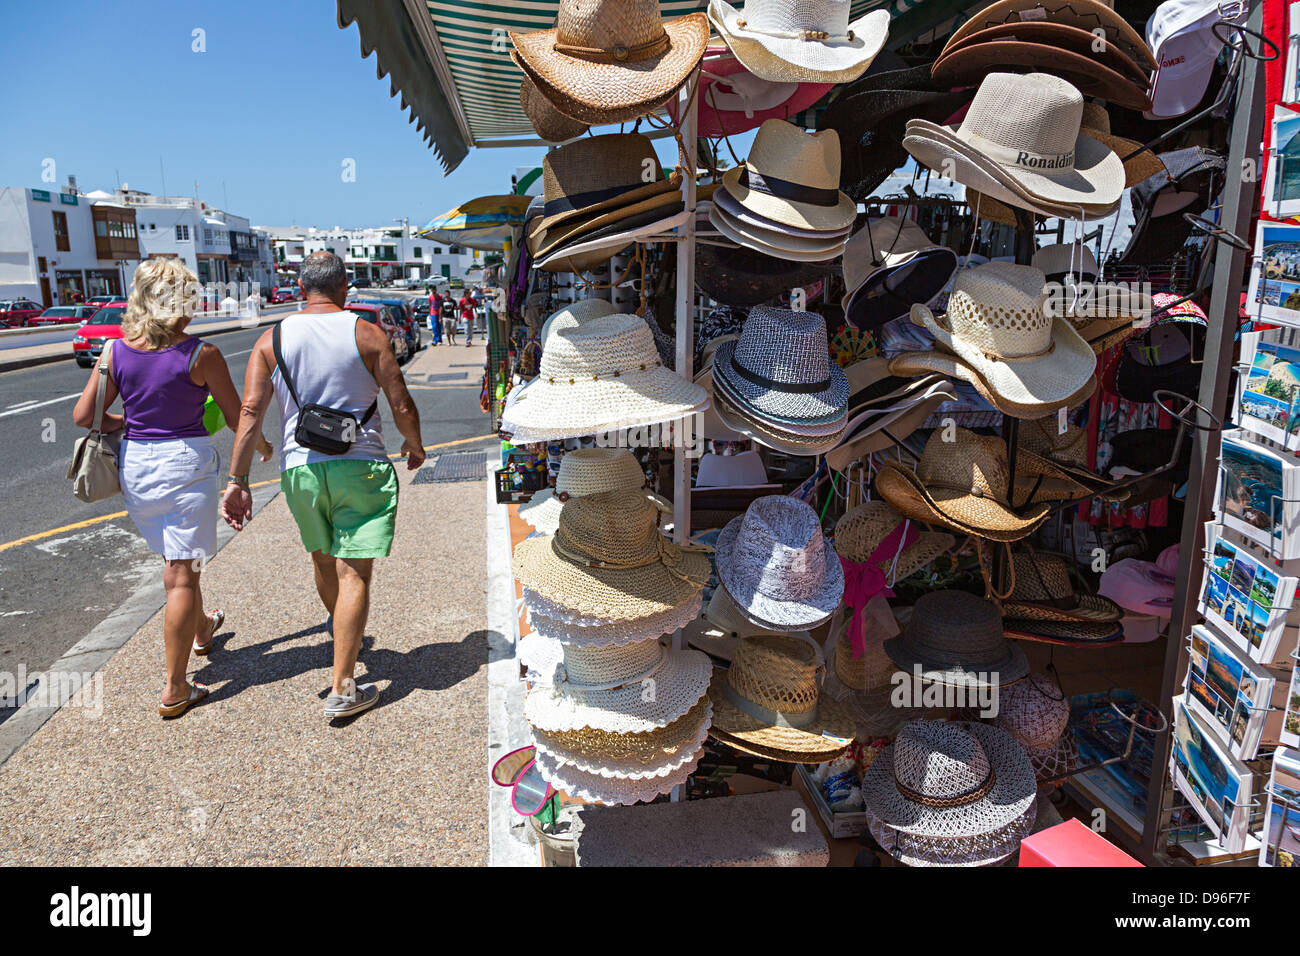 Chapeaux en vente en boutique touristique au bord de la plage, Playa Blanca, Lanzarote, îles Canaries, Espagne Banque D'Images